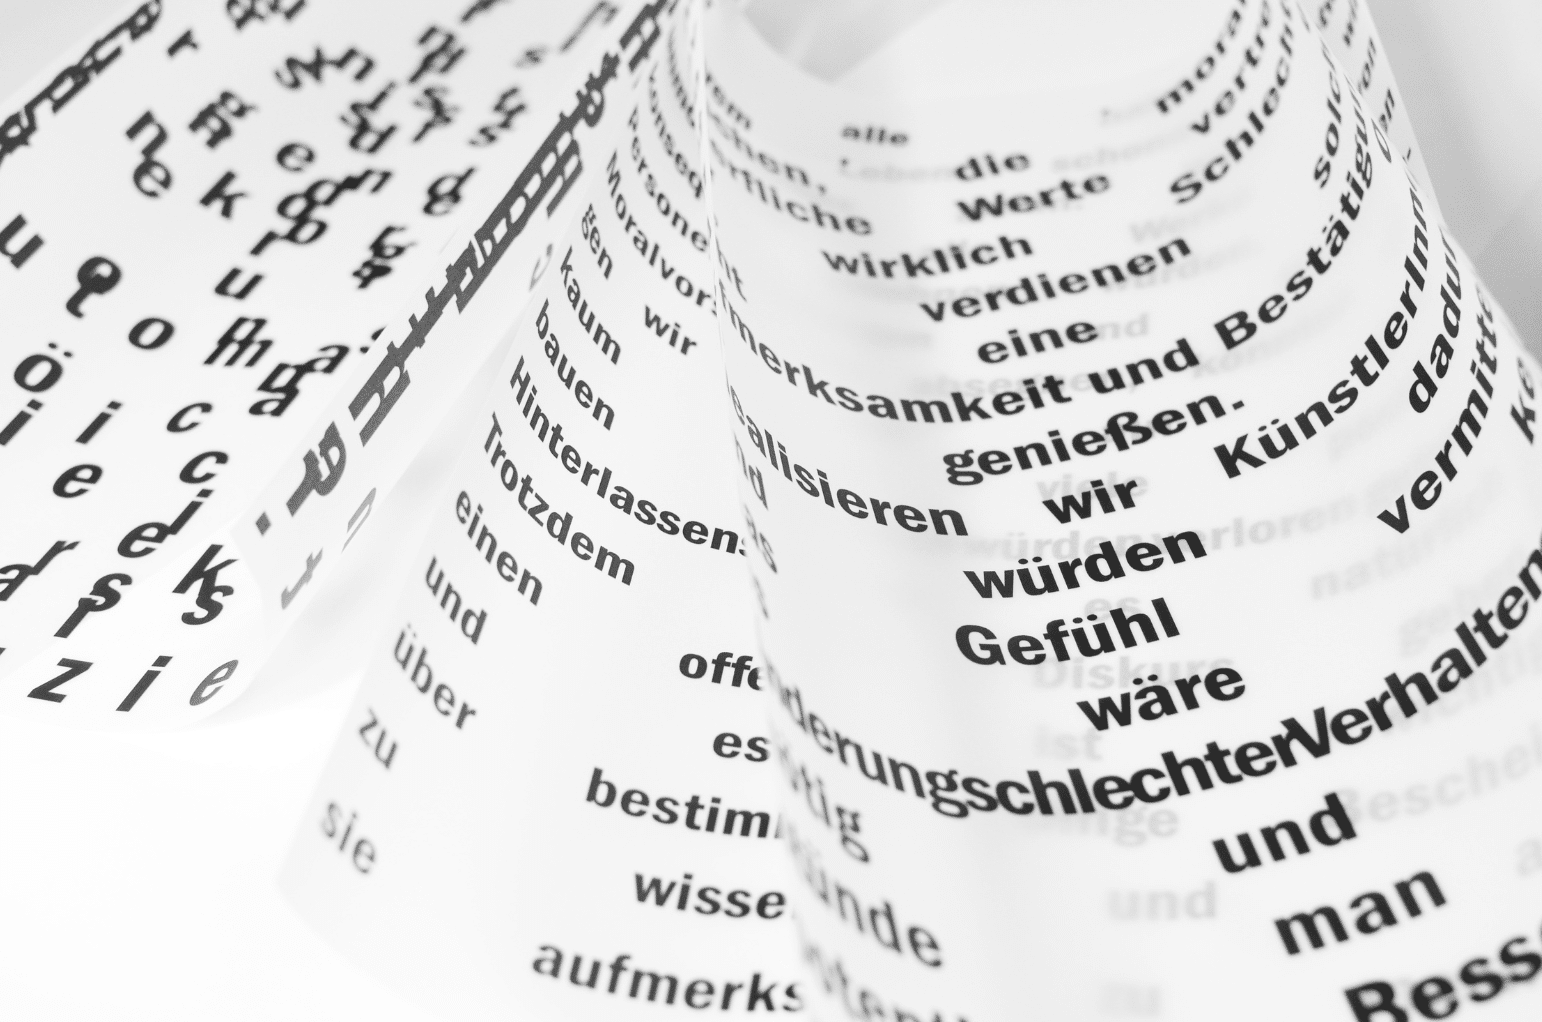 Declension German Sensorik - All cases of the noun, plural